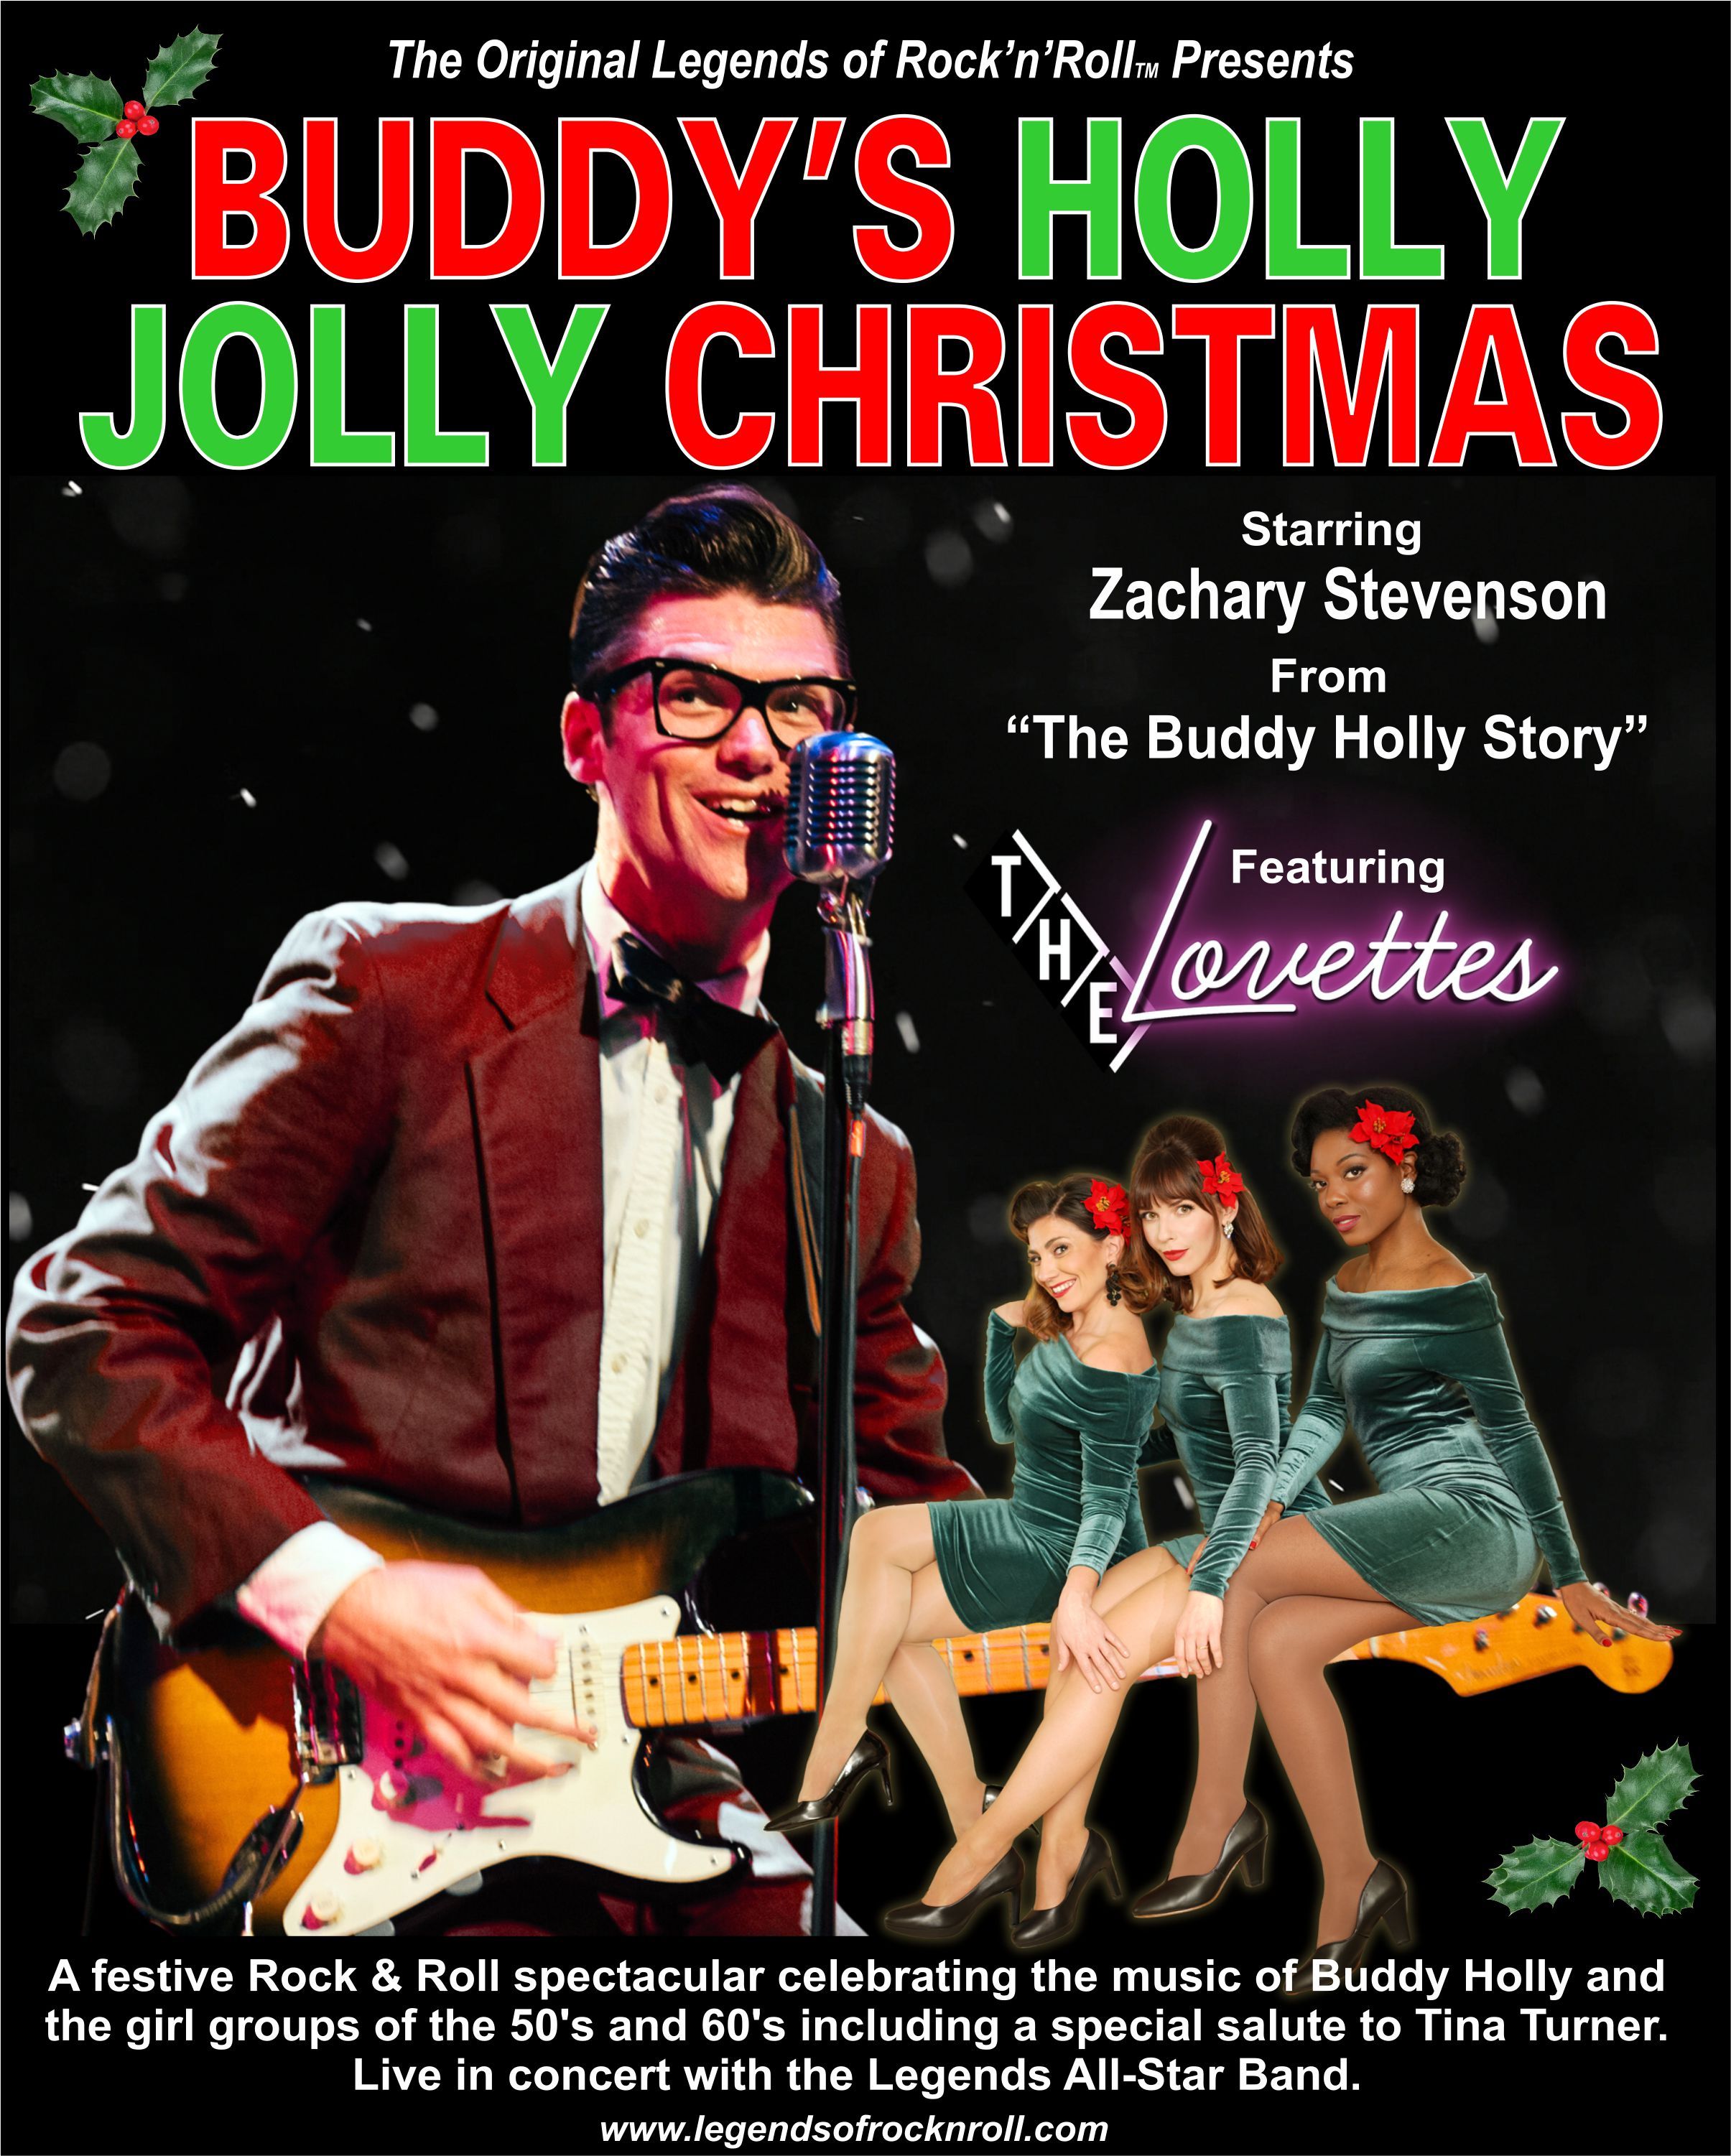 Buddy's Holly Jolly Christmas